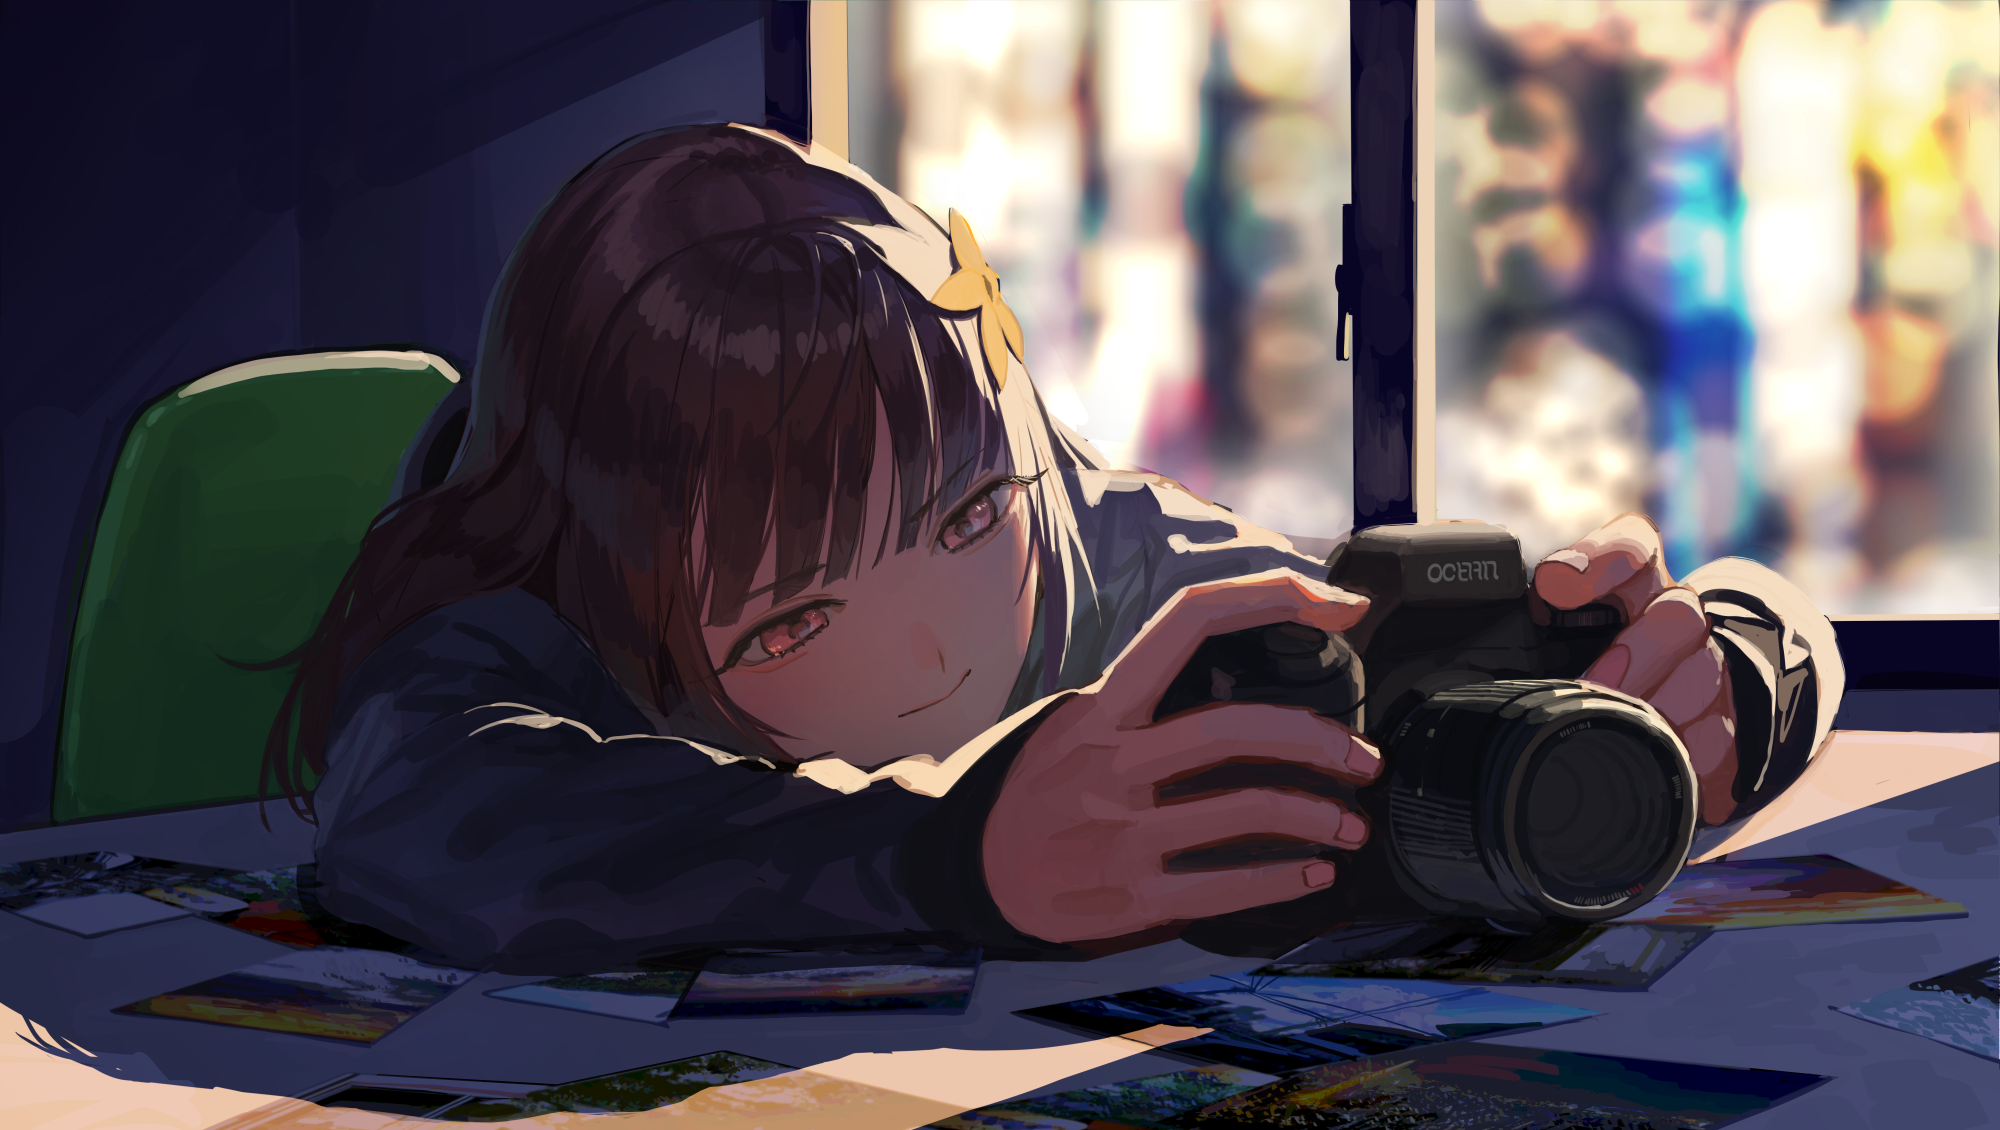 Anime wallpaper - Sweet photographer girl